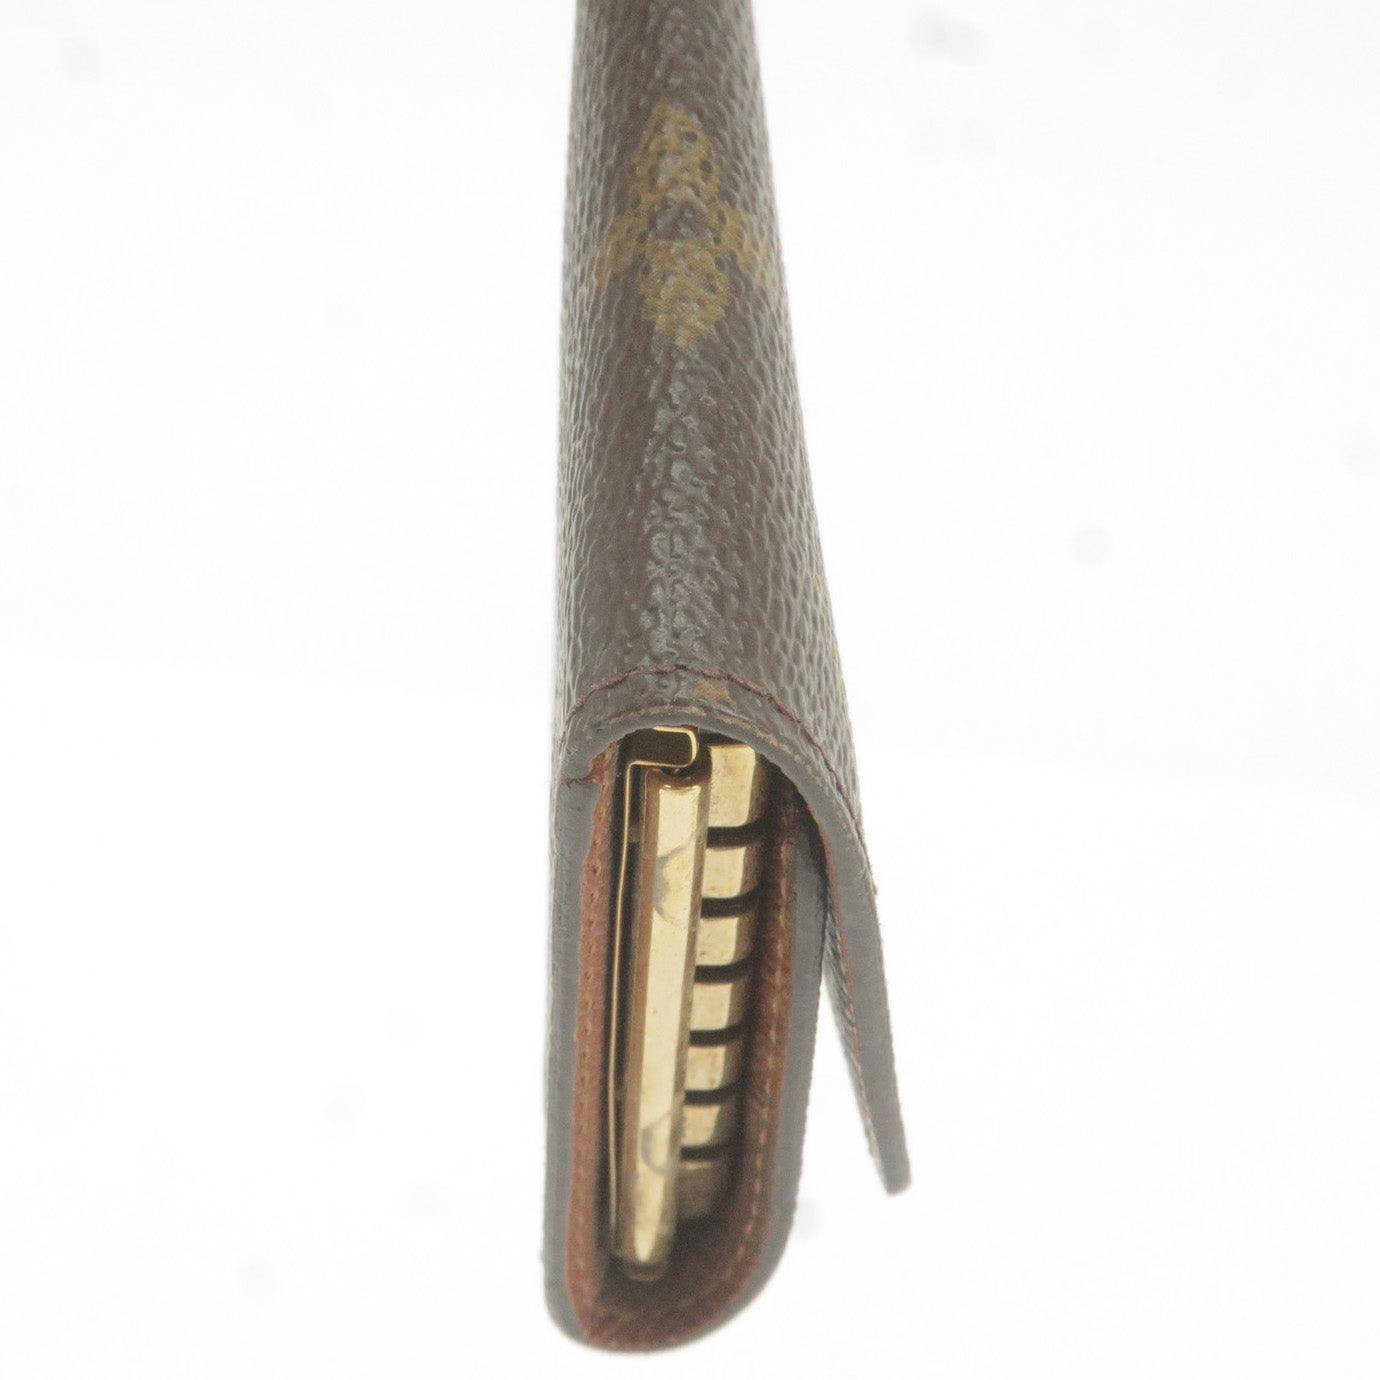 Louis-Vuitton-Monogram-Multicles-6-Key-Ring-Key-Holder-Case-N62630